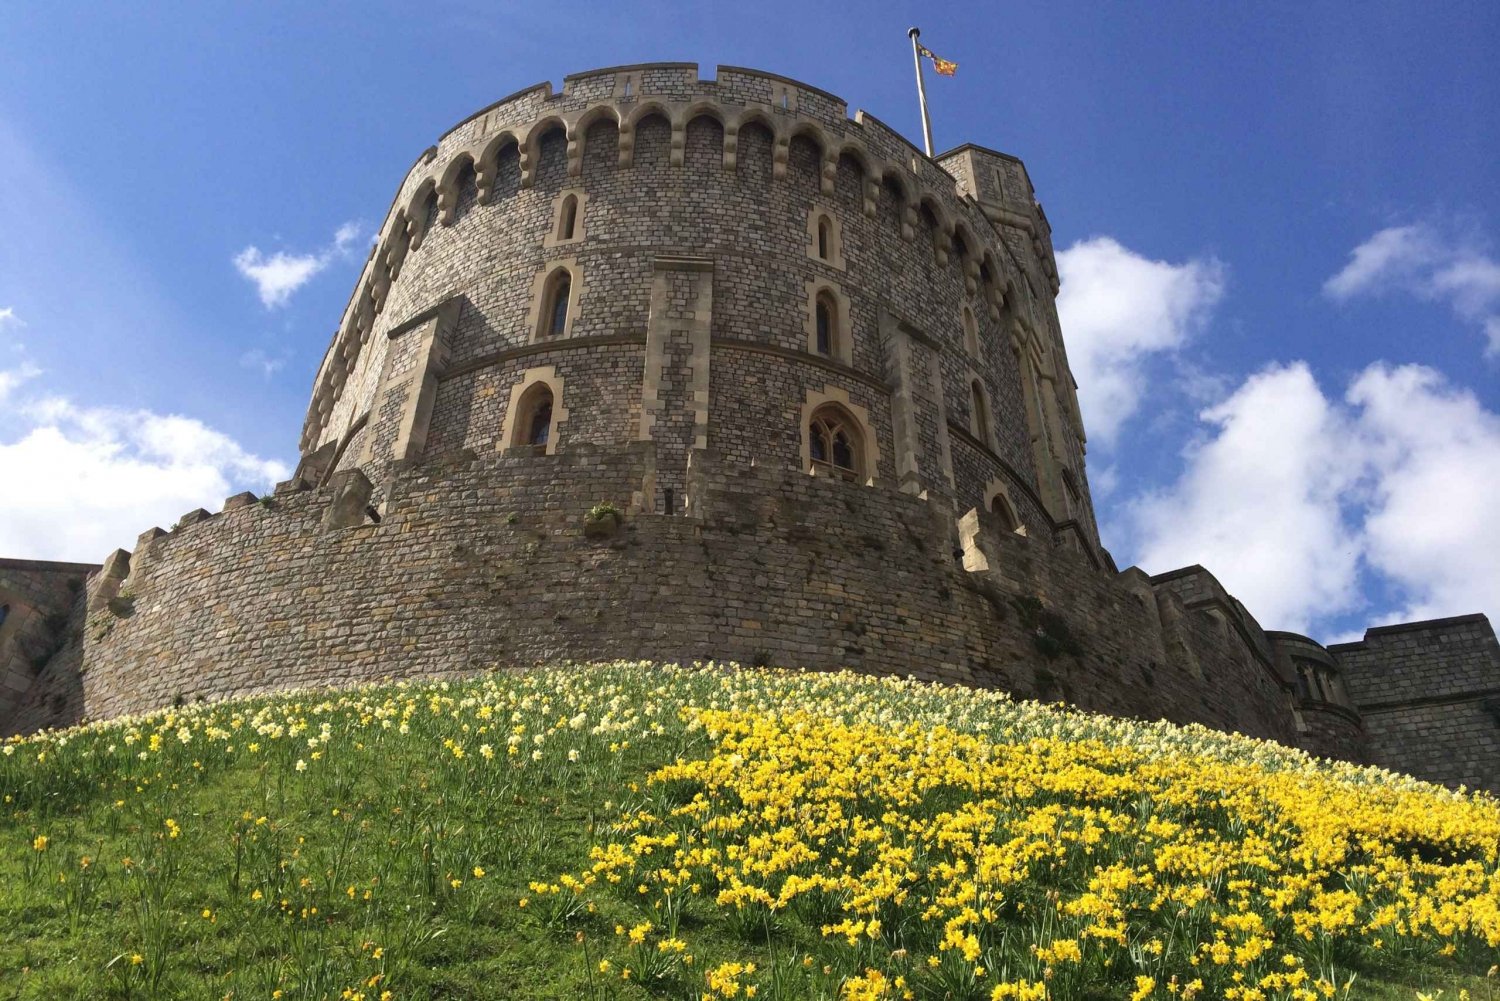 Londra: tour privato del Castello di Windsor con trasferimenti in hotel